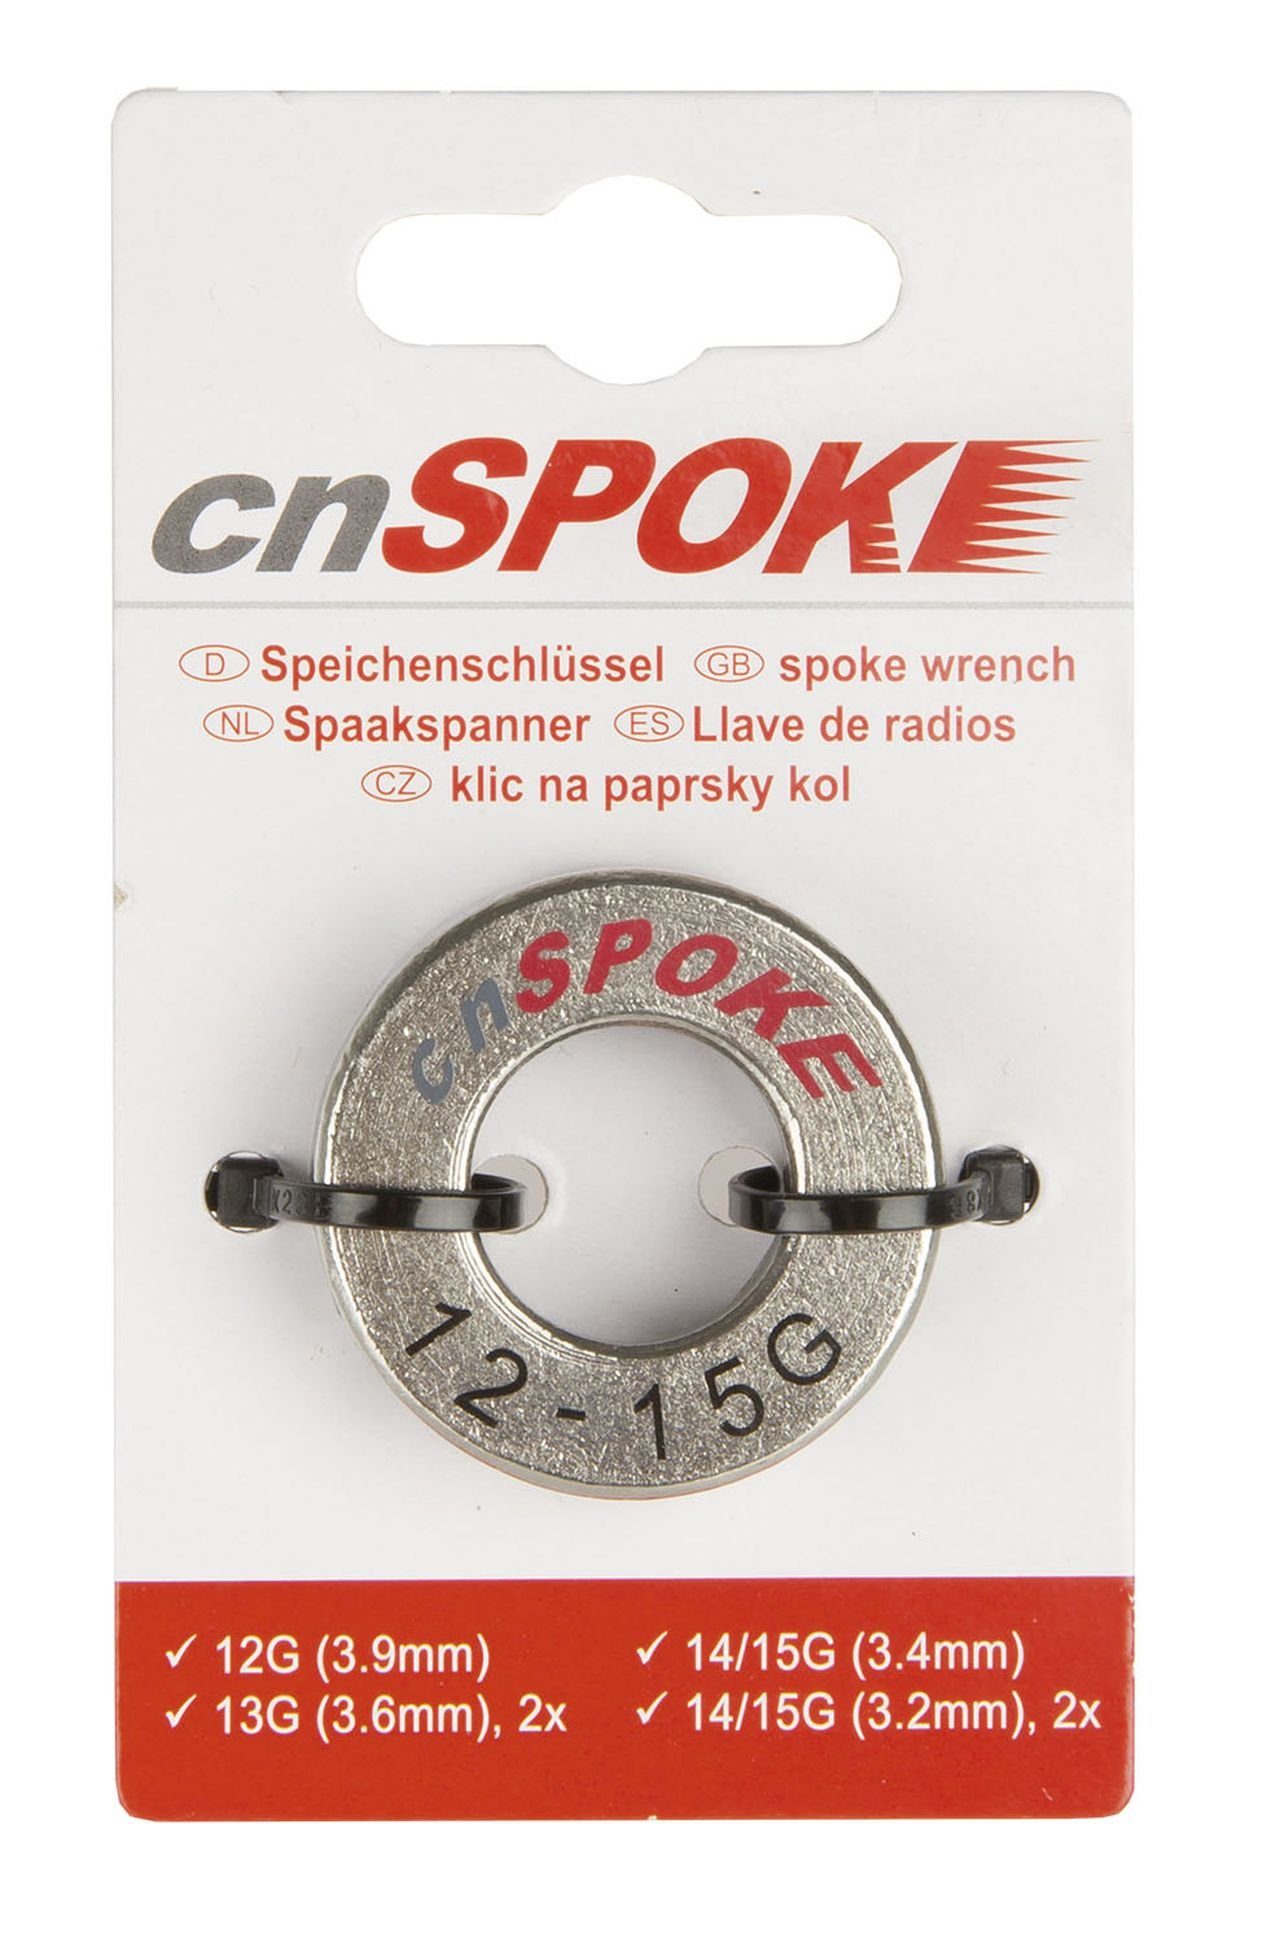 CN_Spoke Fahrradwerkzeugset Speichen Nippelgrößen 13 15 Spoke G für 12 CN Nippelspanner 14